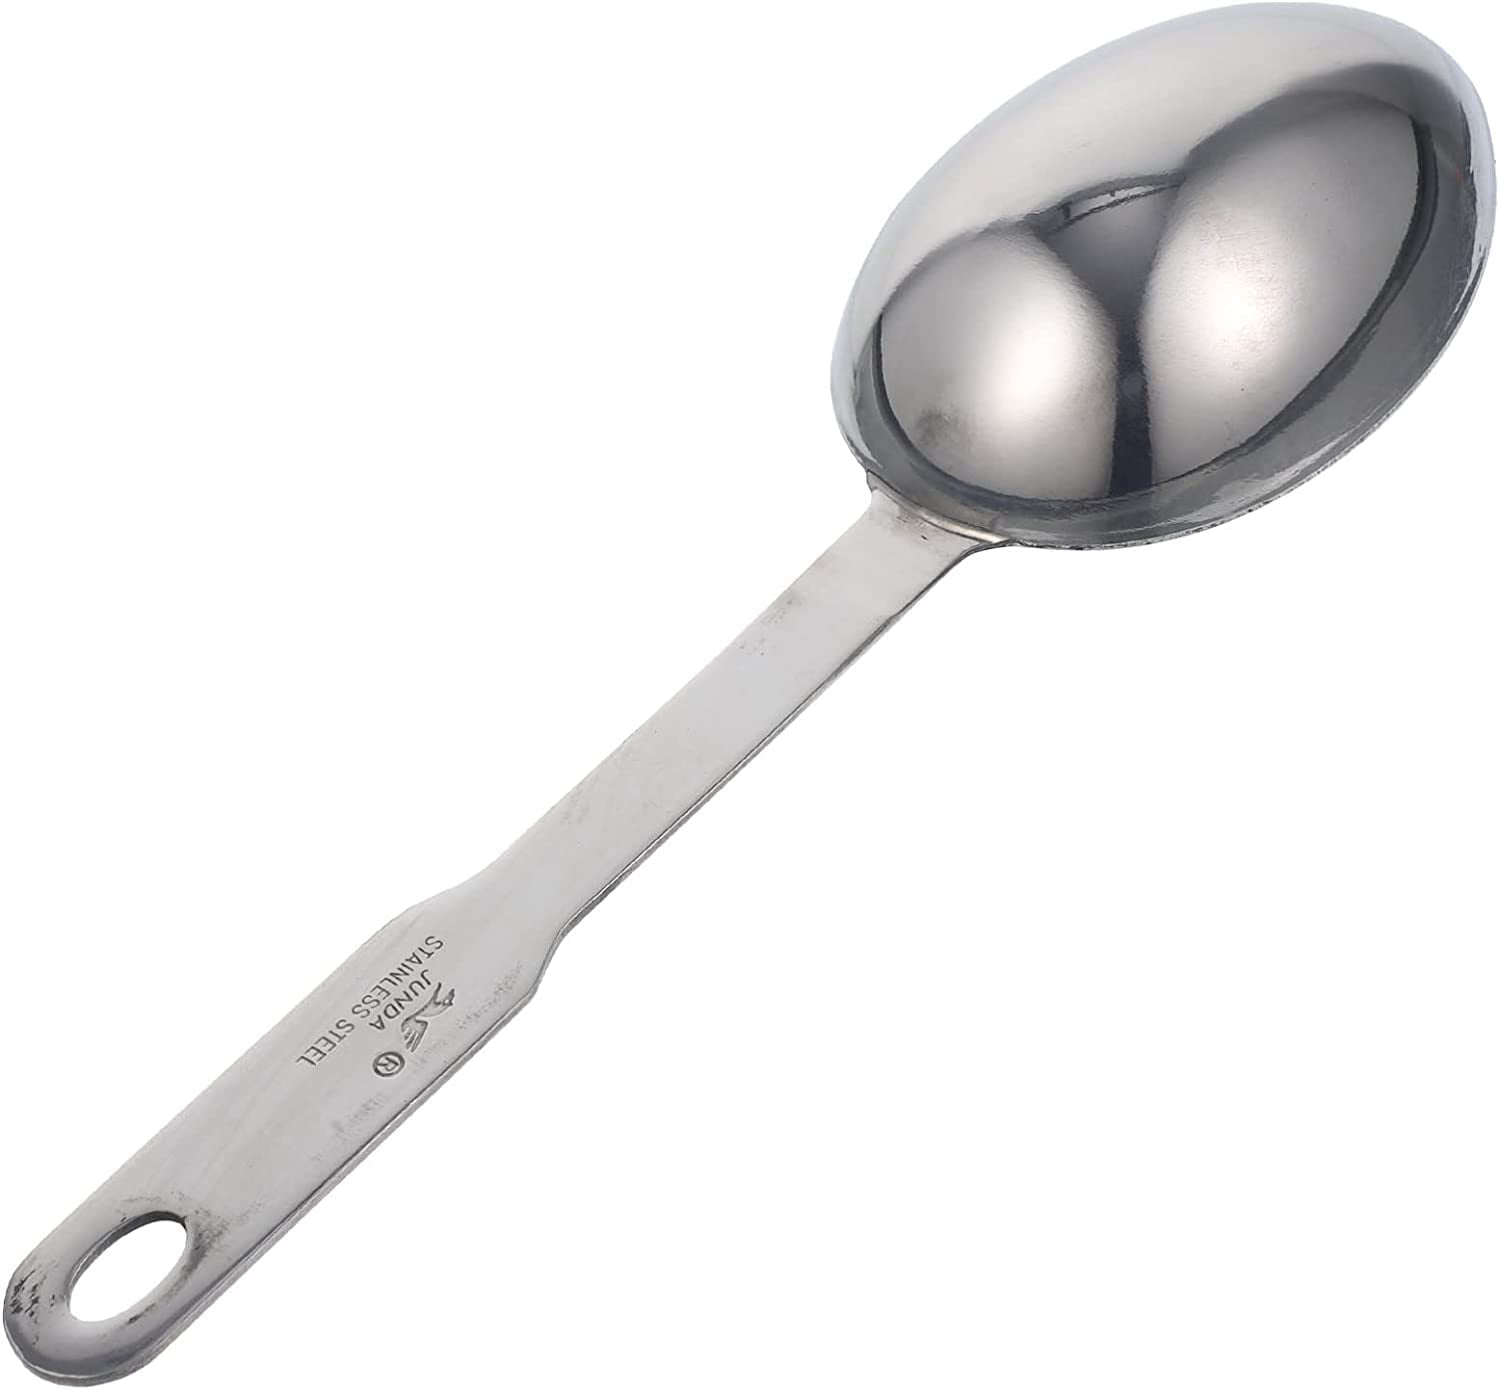 Stainless Steel Measure Spoon Tools Cake Baking Measuring Scoop Milk Coffee Measure  Spoons Kitchen Bakeware Scoops LT515 From Shanshan8, $5.22